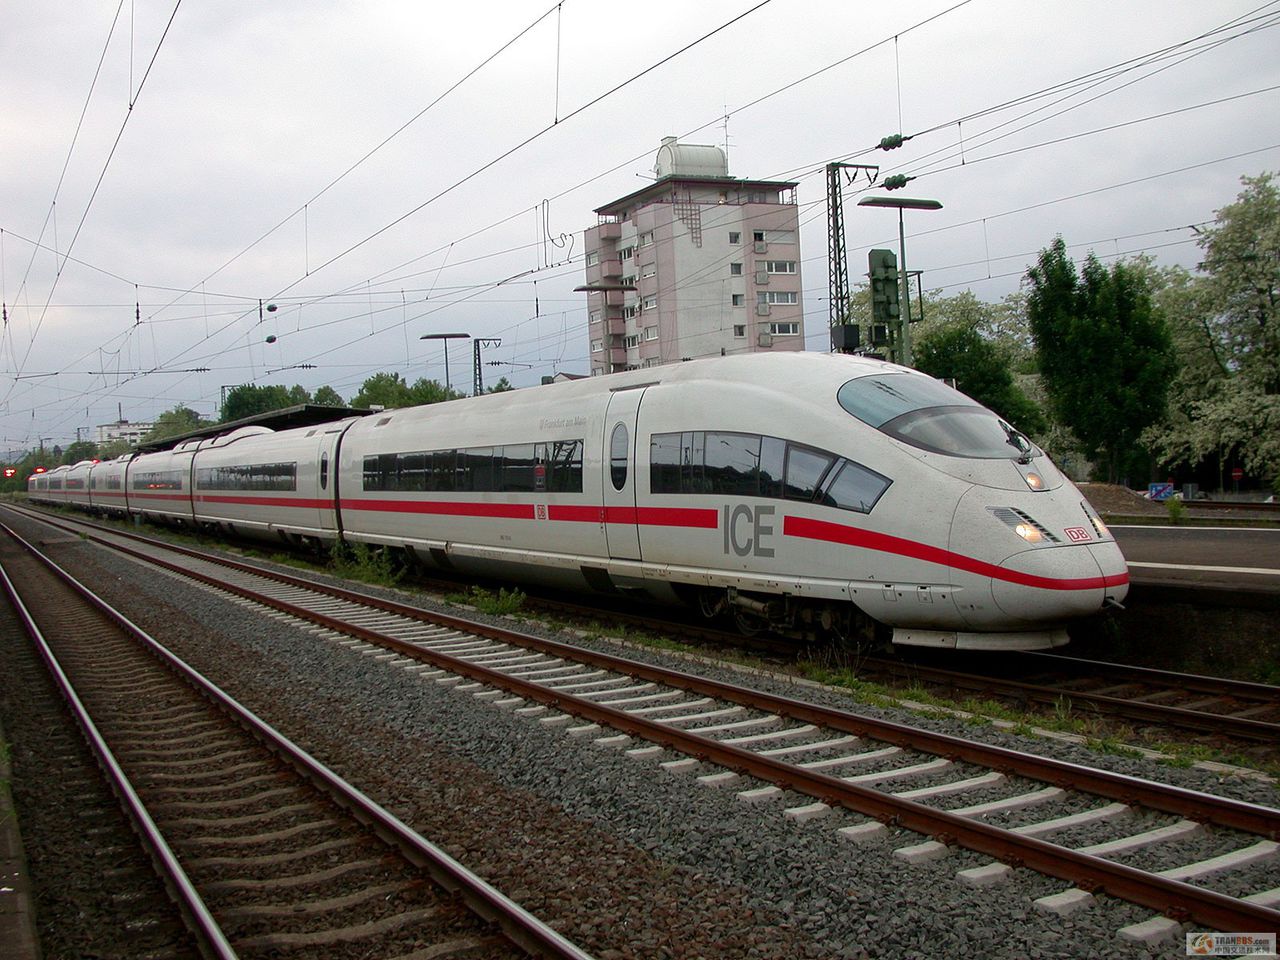 德國高速鐵路(德國ICE高鐵)